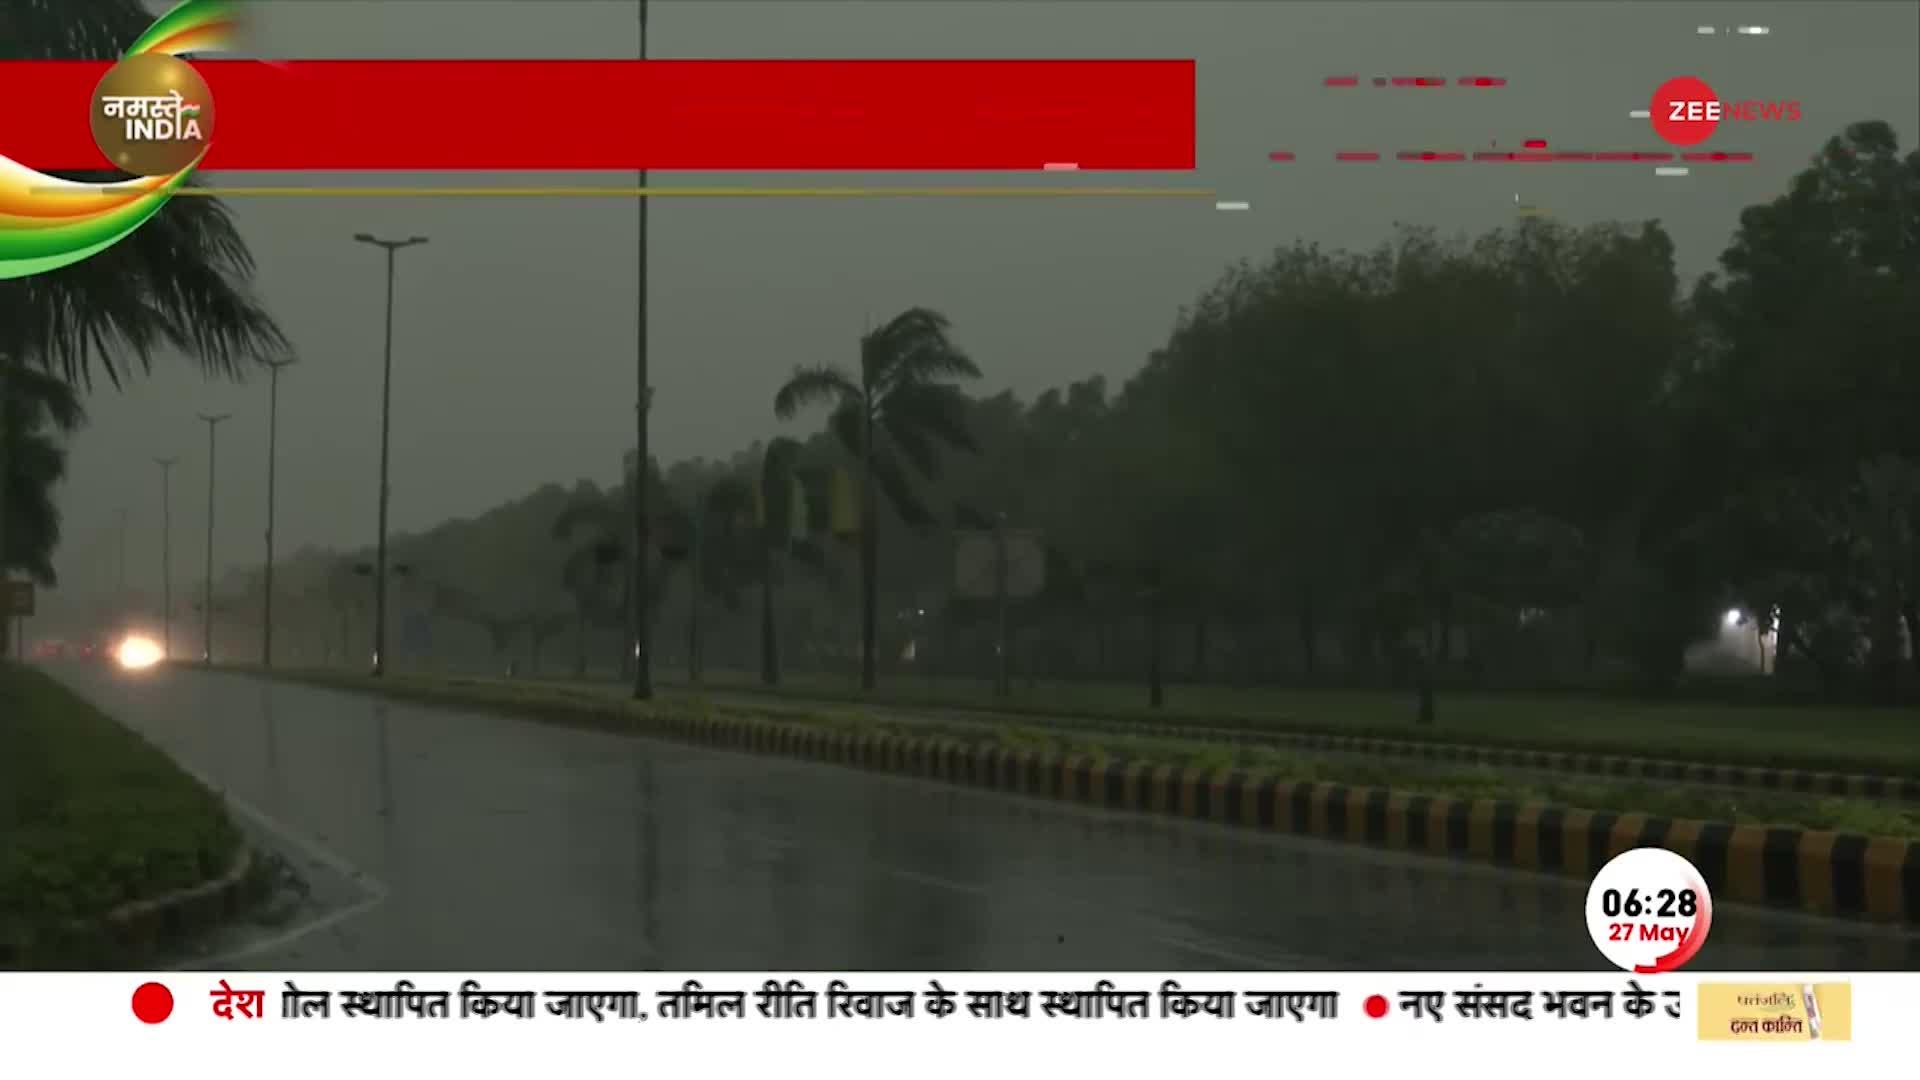 दिल्ली-NCR में बदला मौसम का मिजाज, सुबह से हो रही झमाझम बारिश